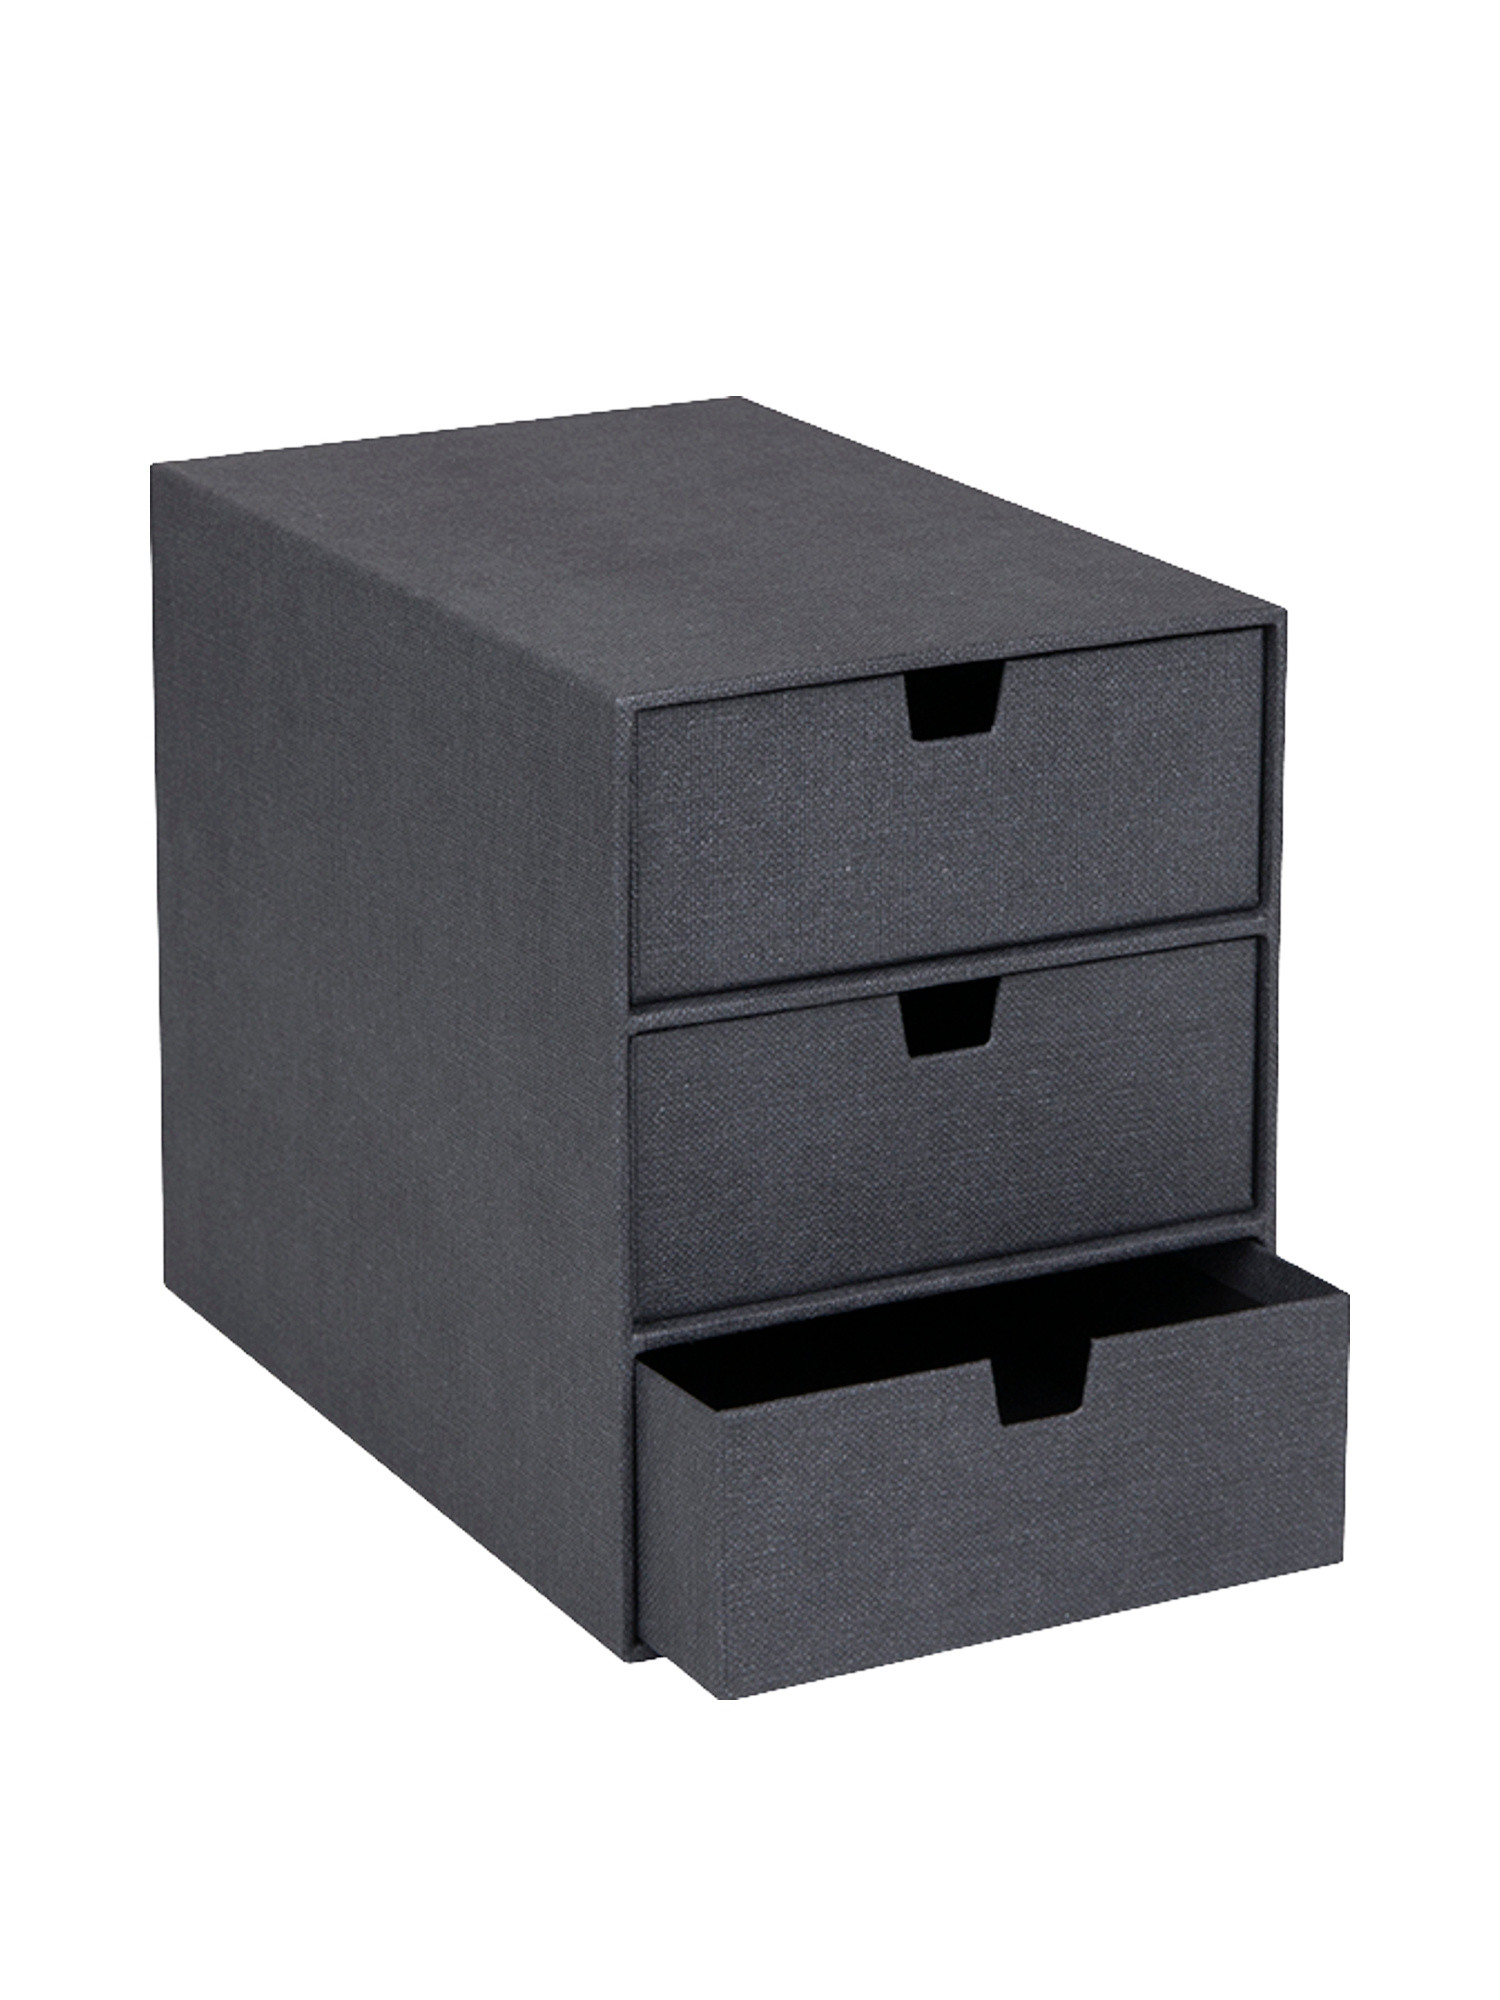 Ingrid desk chest of drawers, Black, large image number 0